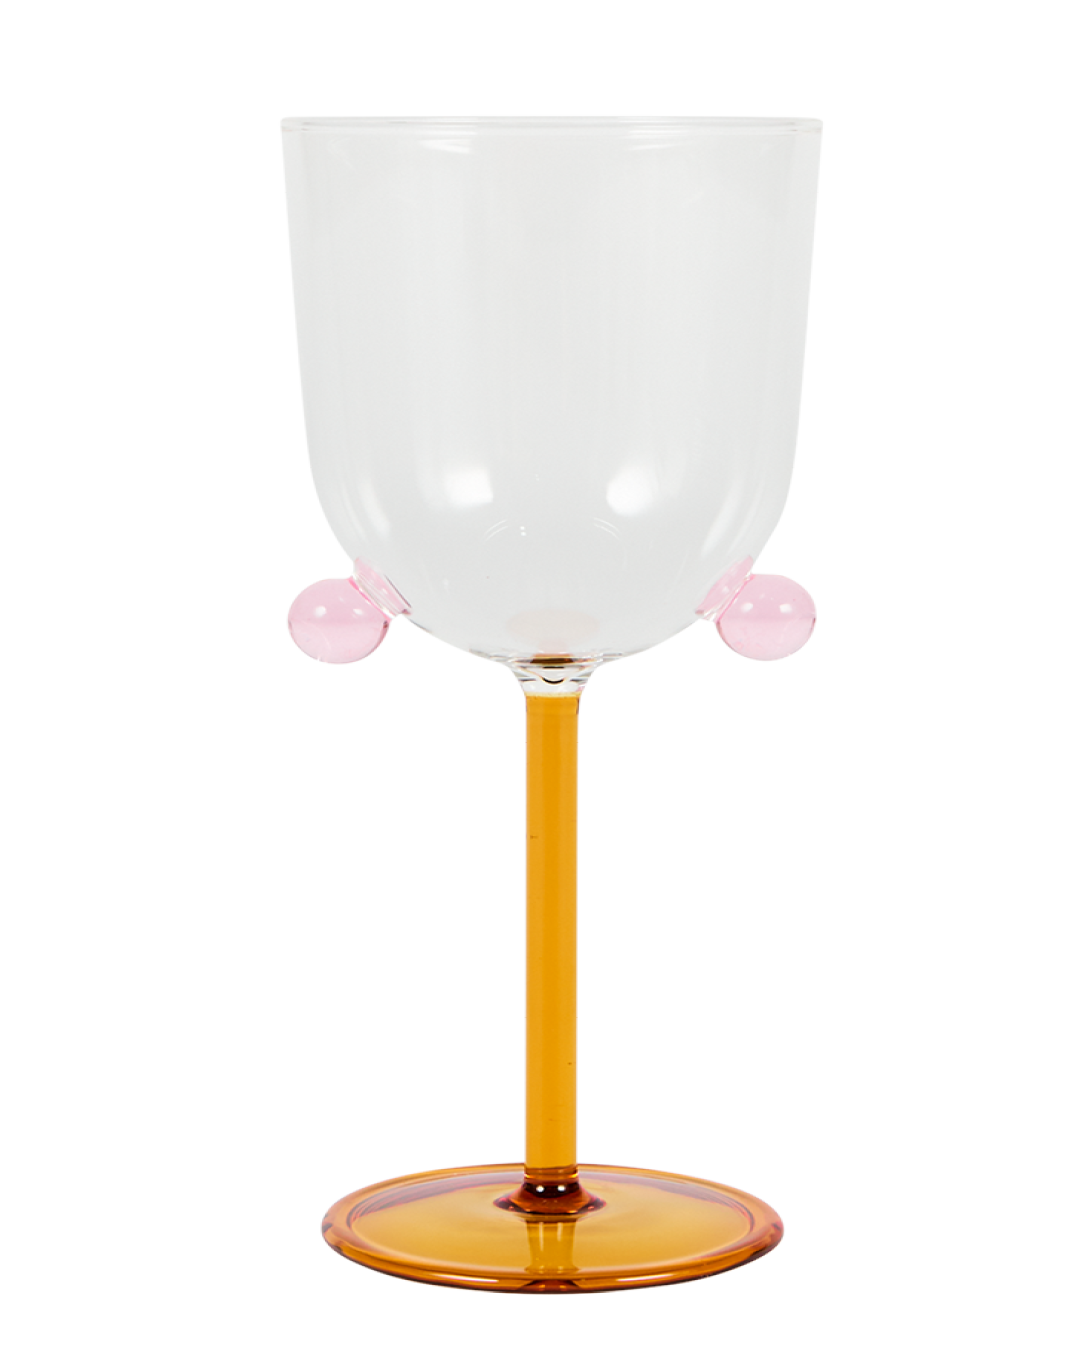 Pompom Wine Glasses